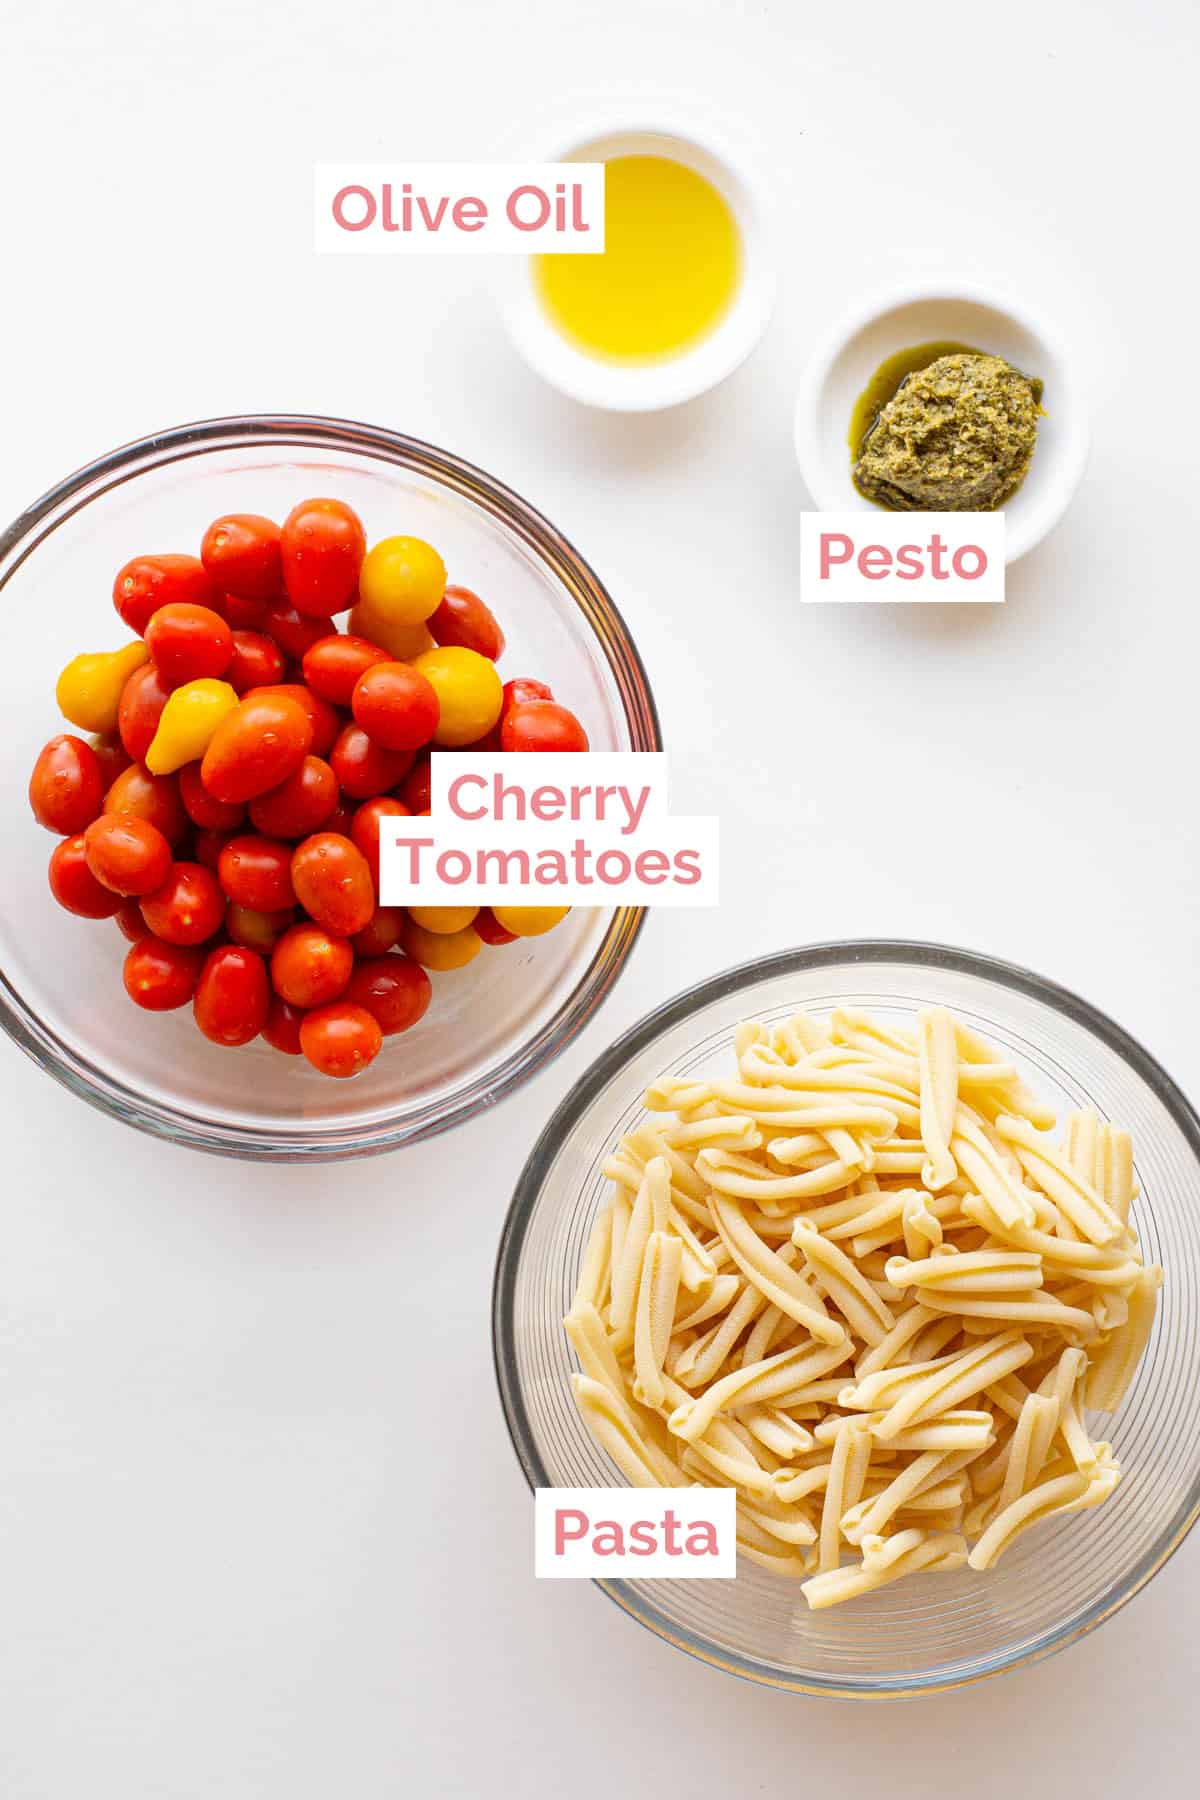 Ingredients laid out ready to make cherry tomato pesto pasta.